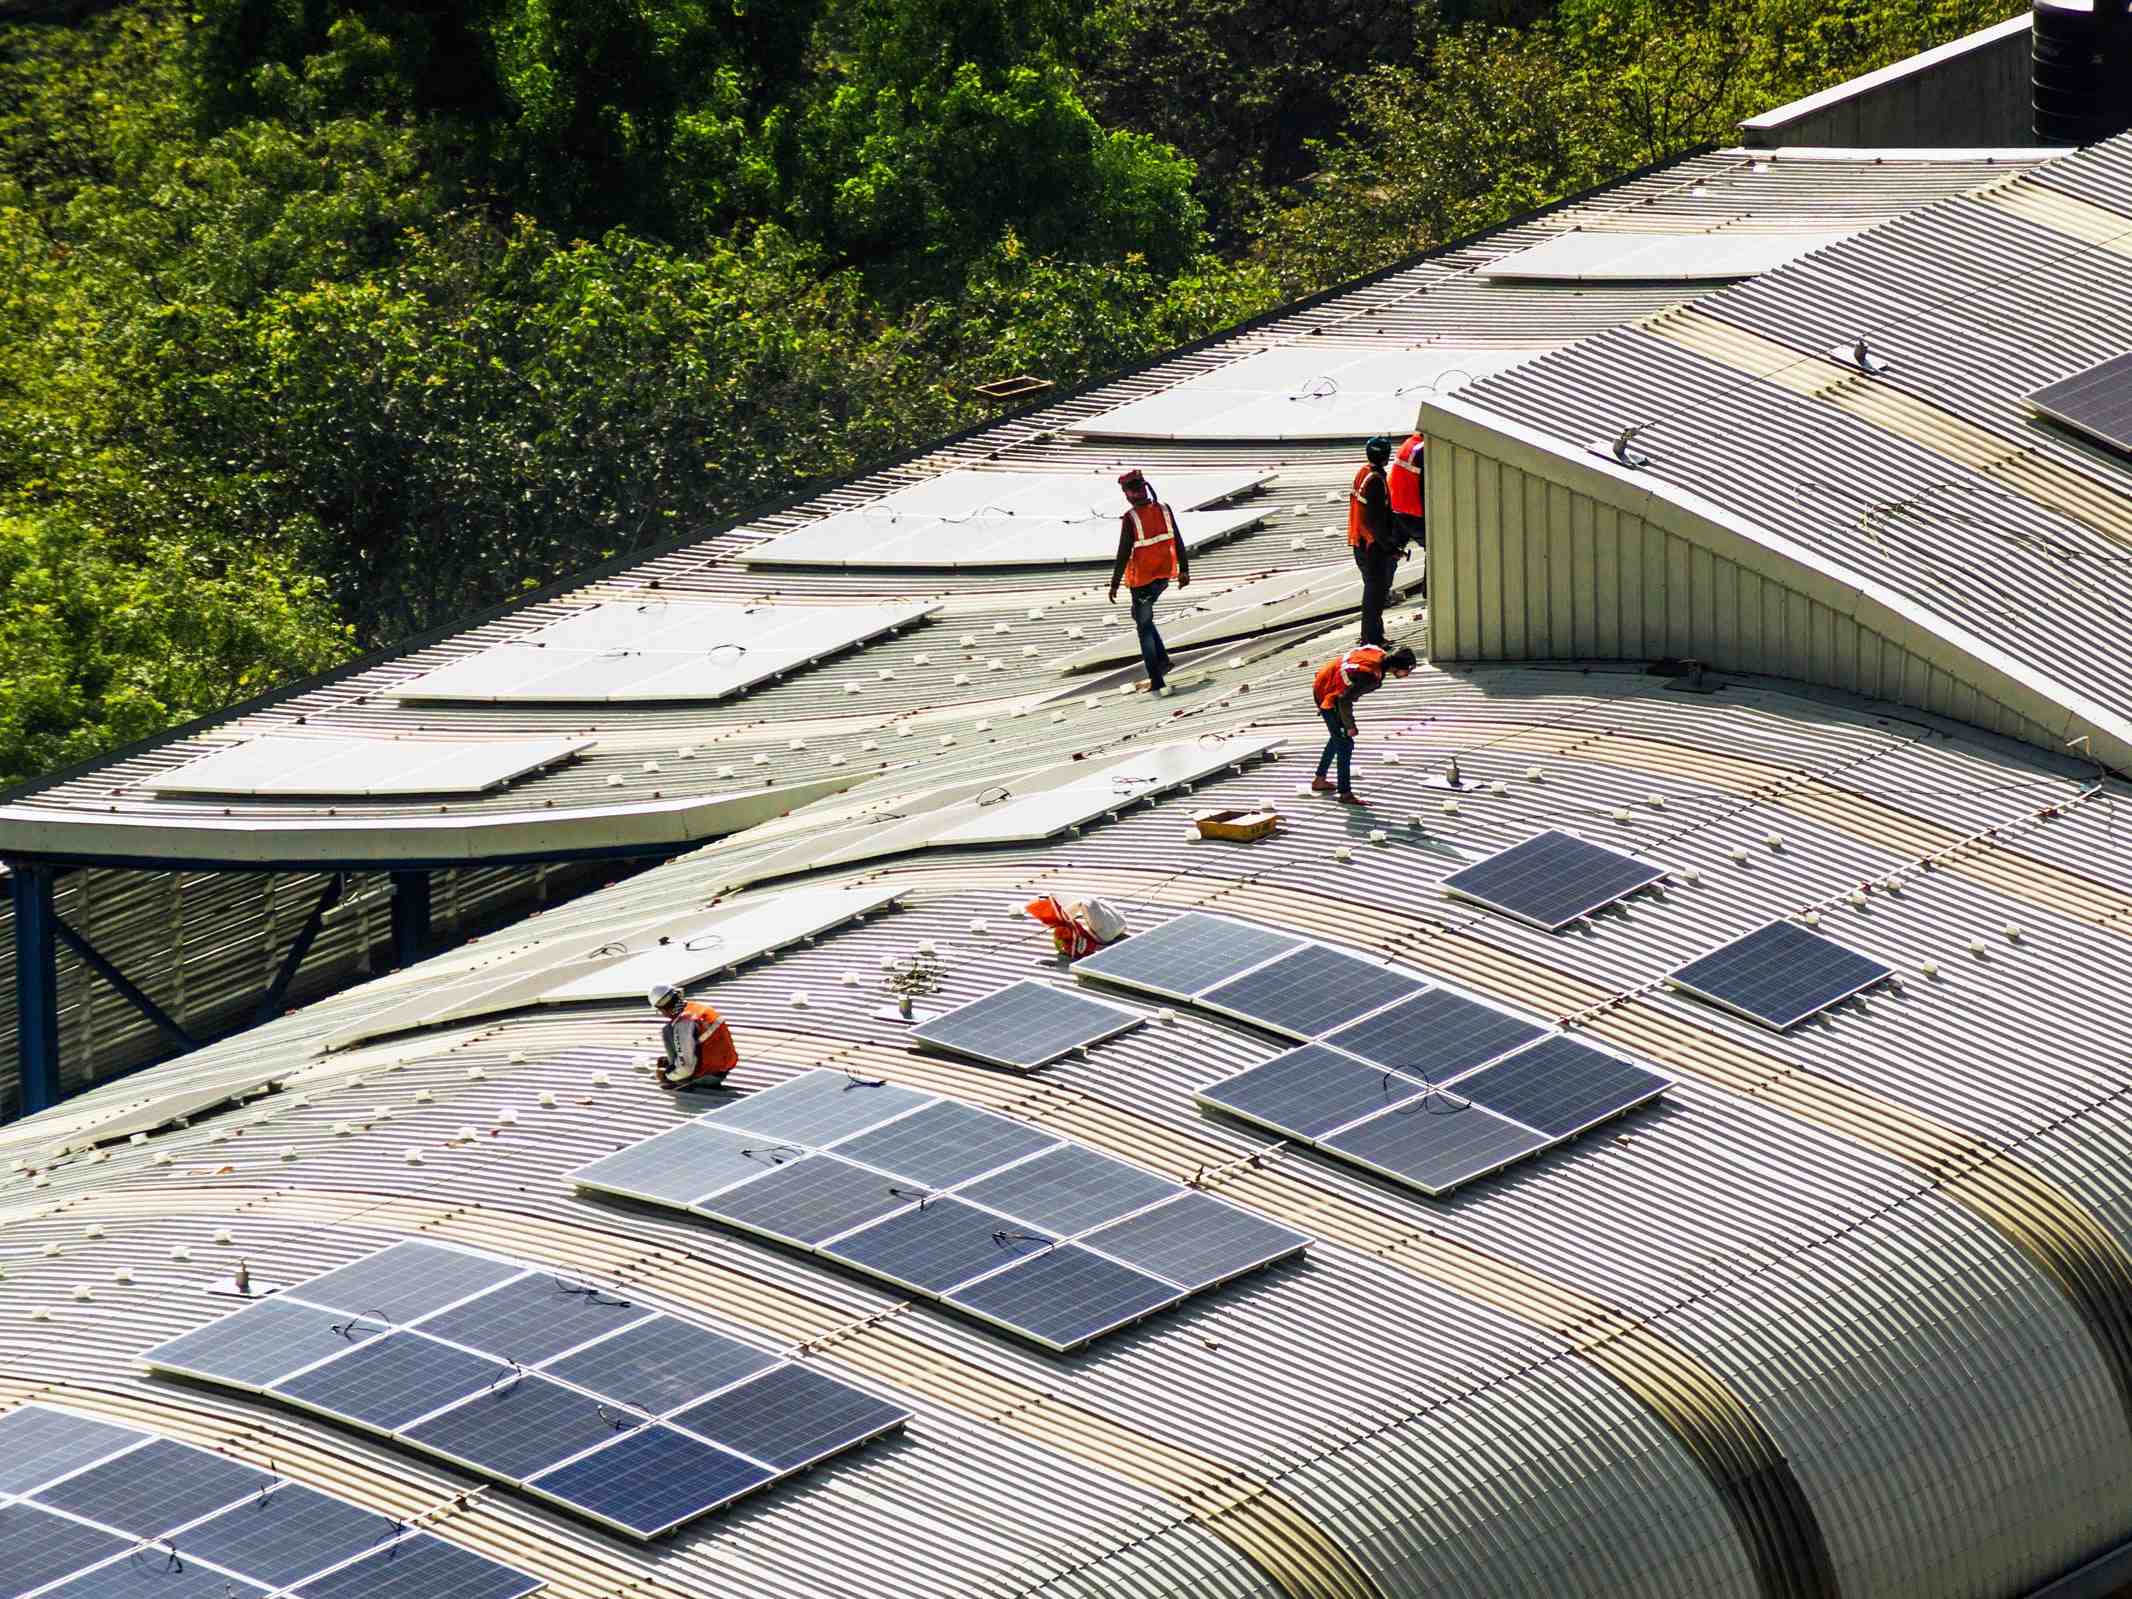 Why are farmers against solar farms?